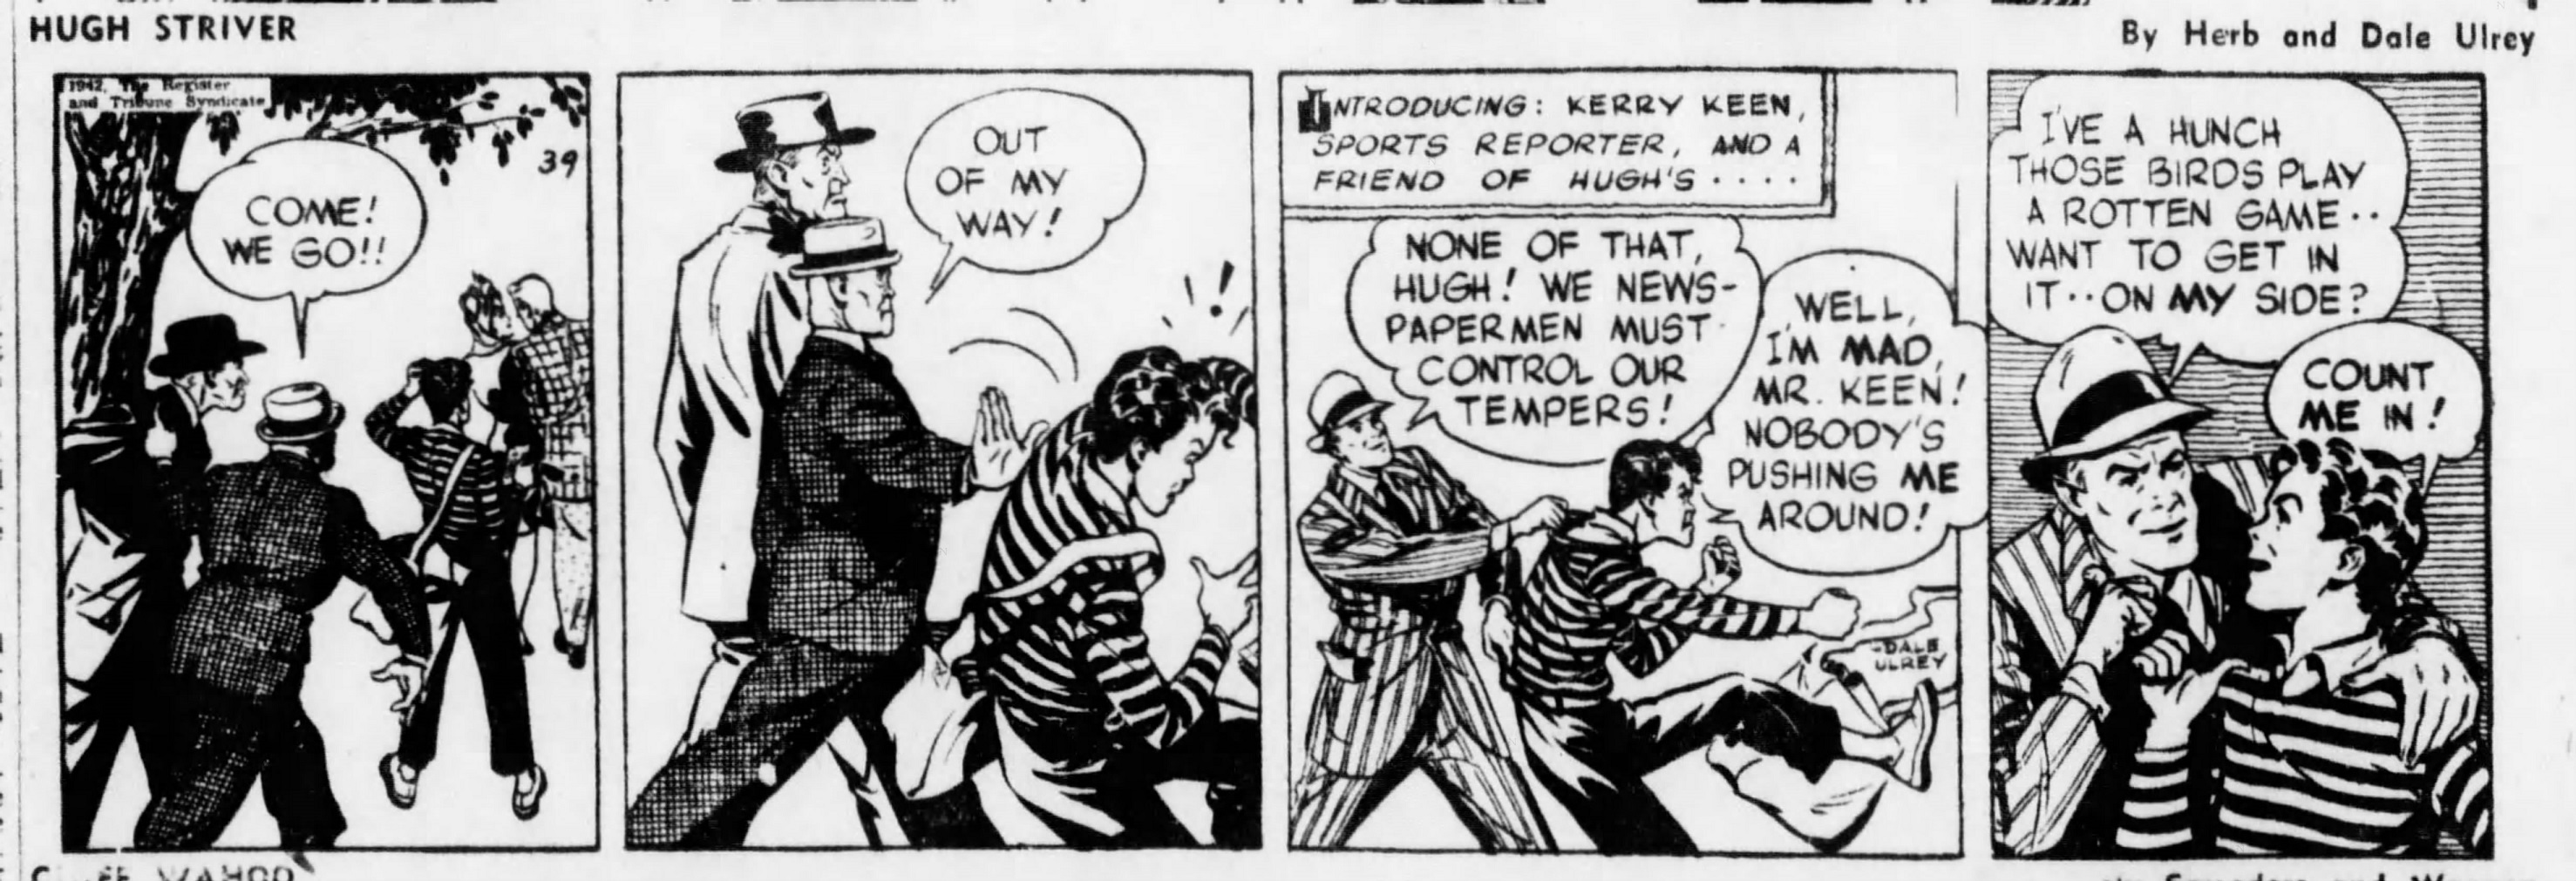 The_Brooklyn_Daily_Eagle_Wed__Nov_18__1942_(9).jpg